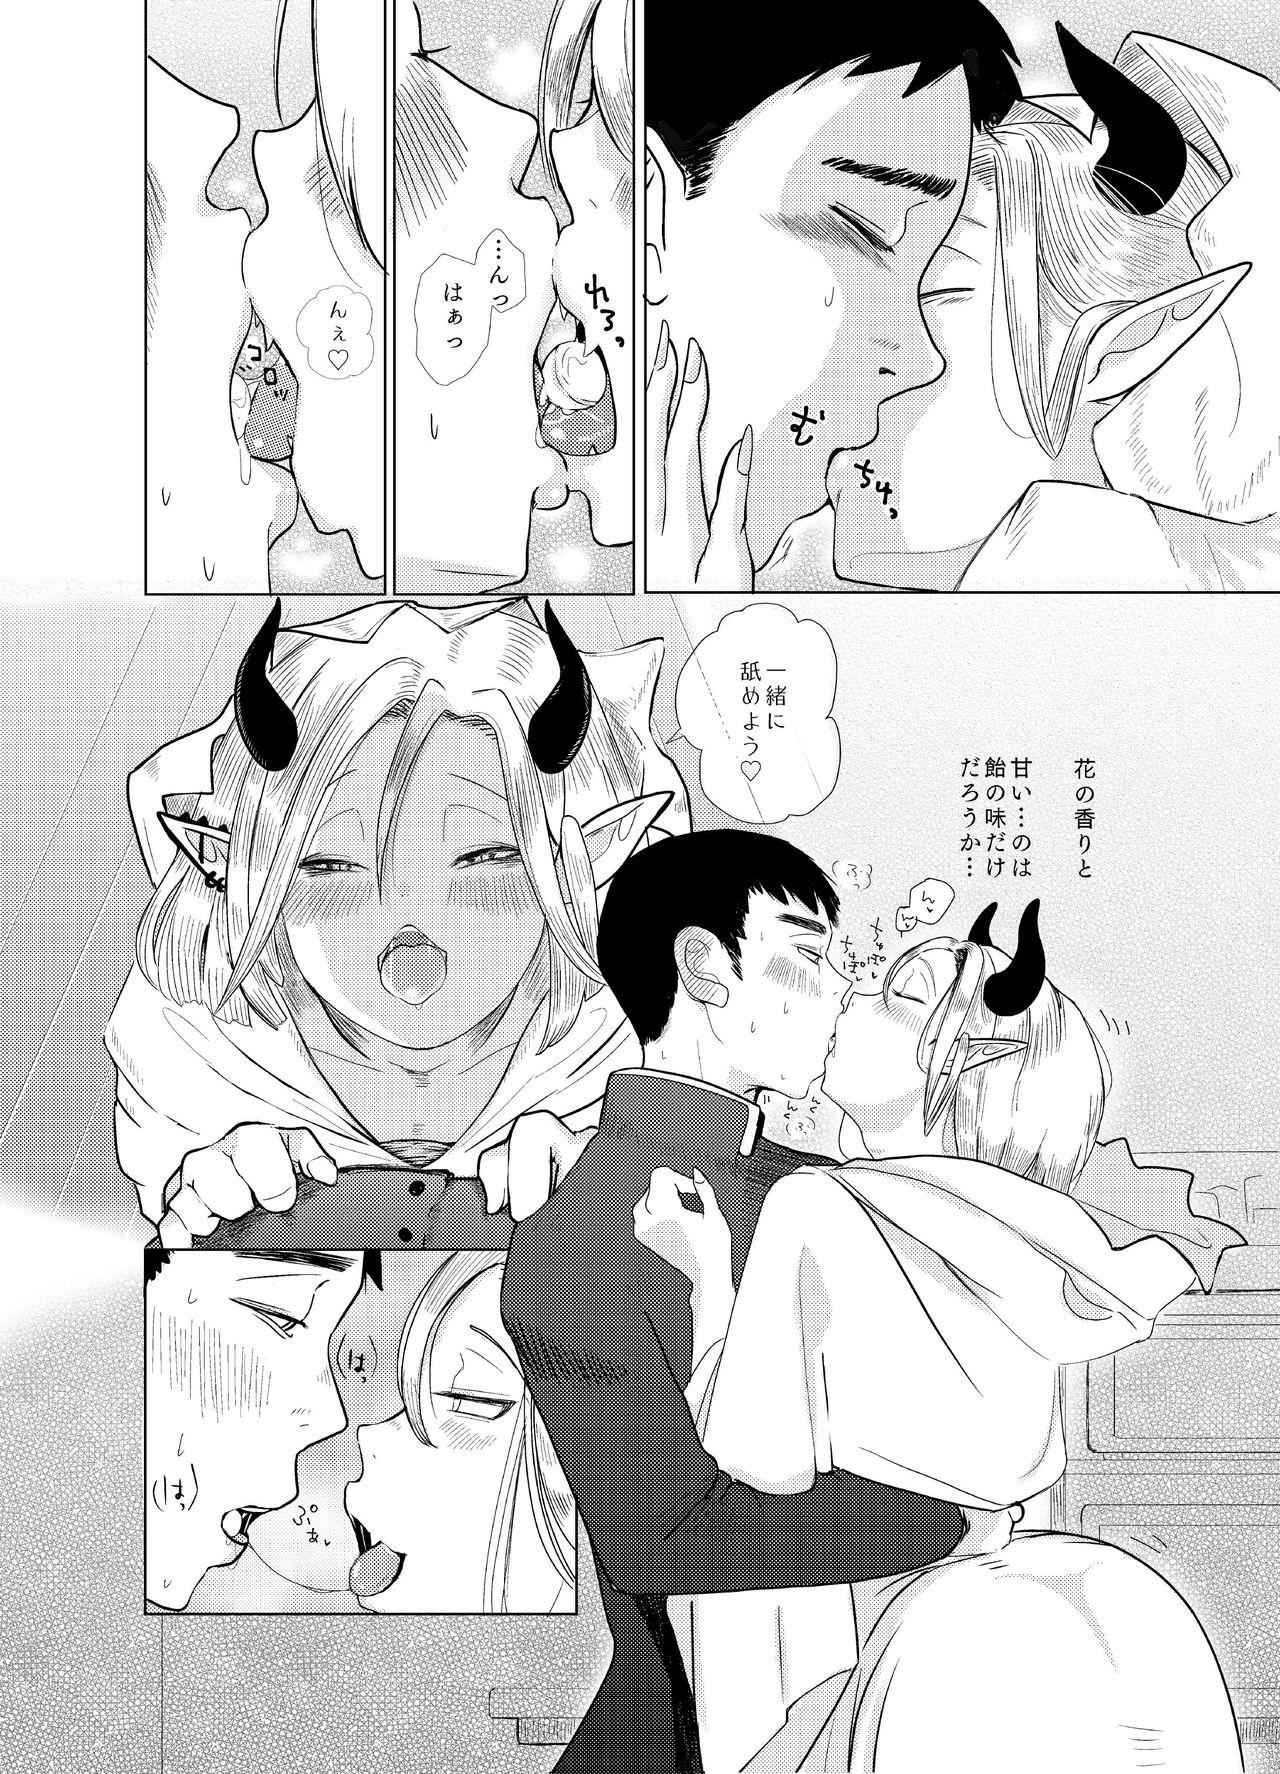 Tributo Kami-sama Yurushite kureru yo ne? #2 Olderwoman - Page 8